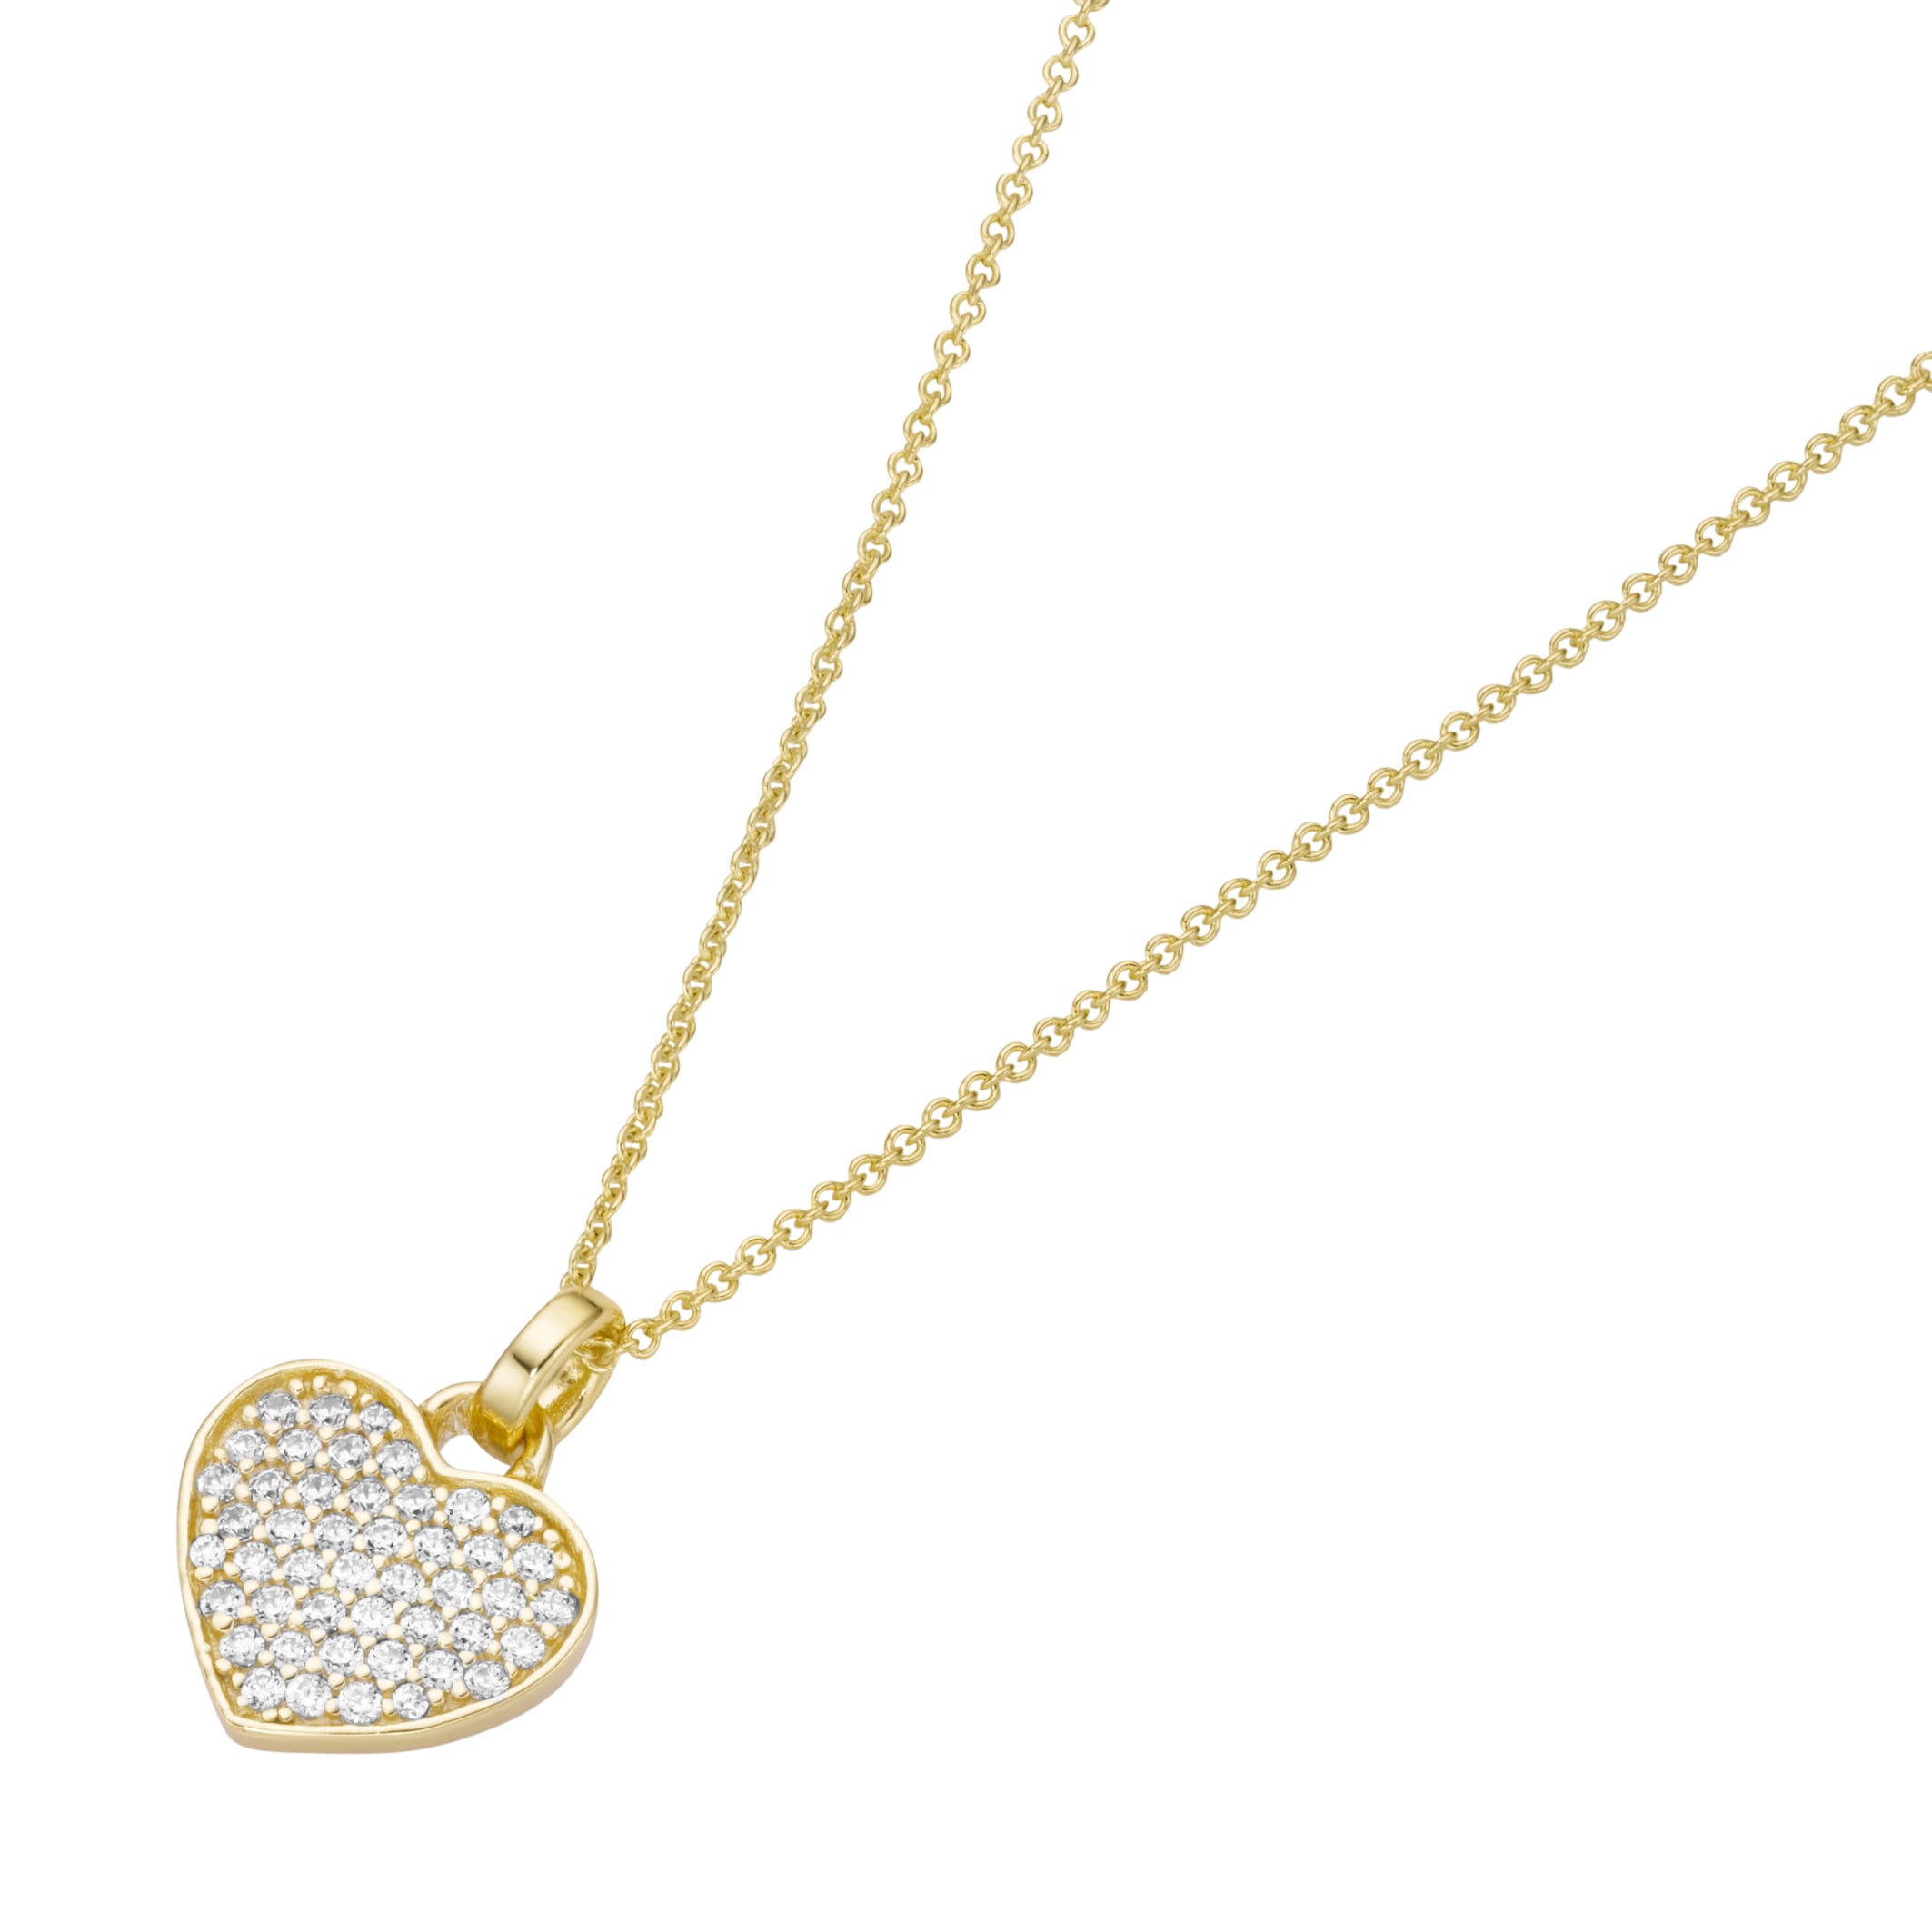 OTTO Online Herz kaufen Herzkette im Silber Shop »Kette mit Zirkonia, Smart 925« Jewel